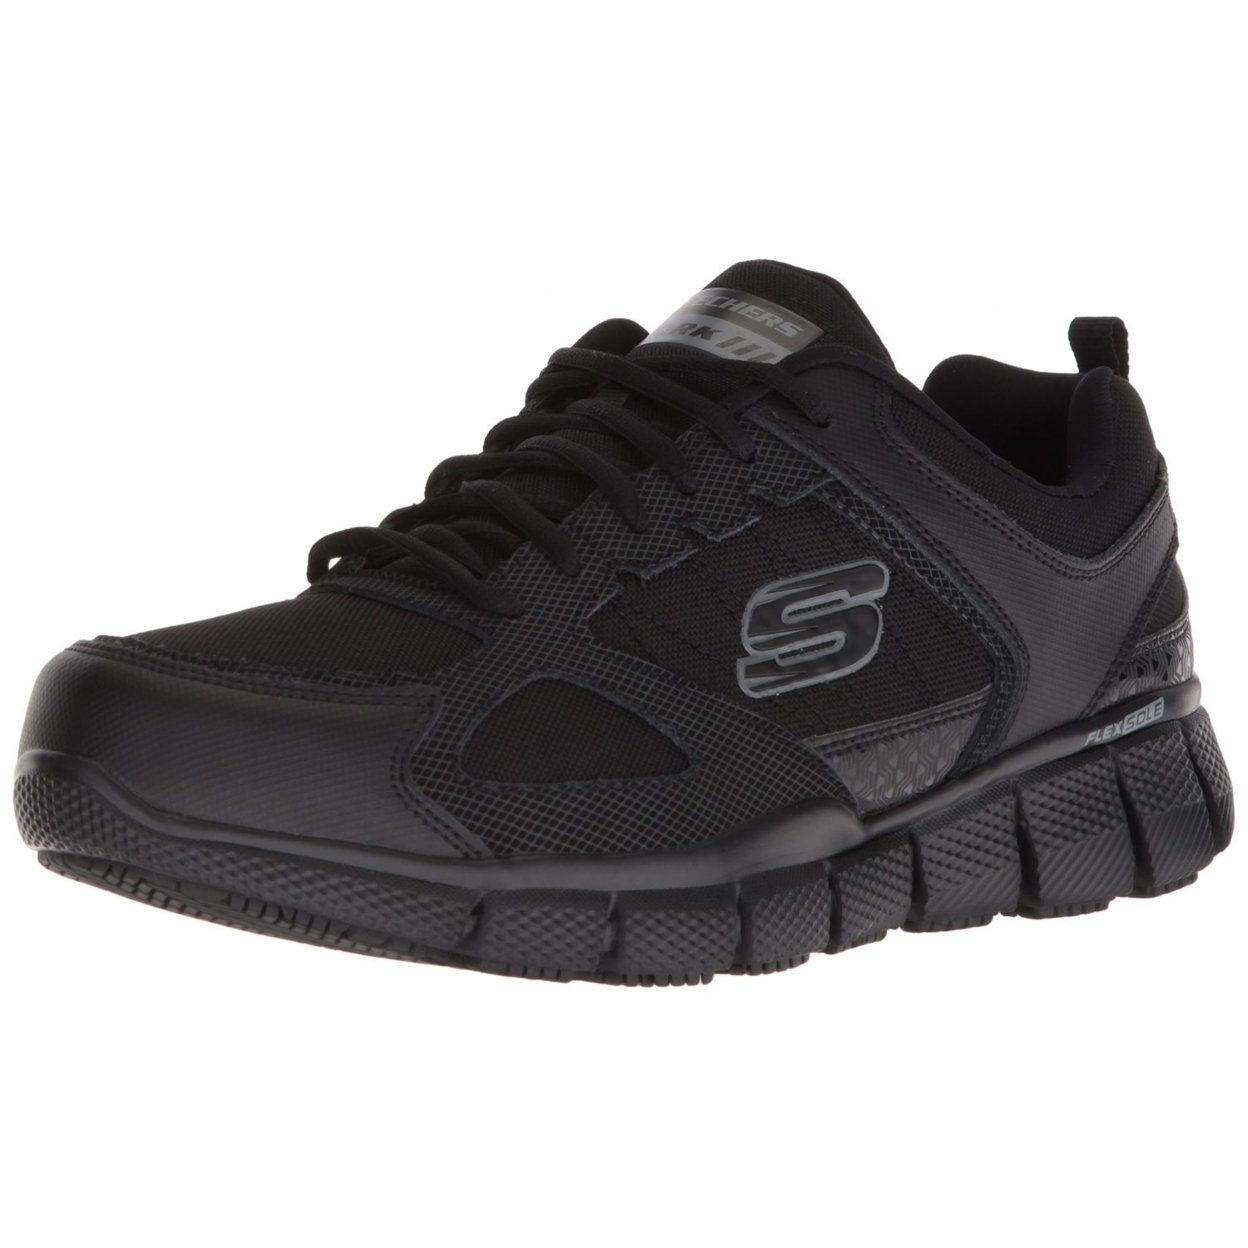 Skechers Men's Telfin-sanphet Industrial Shoe BLACK - BLACK, 13 WIDE